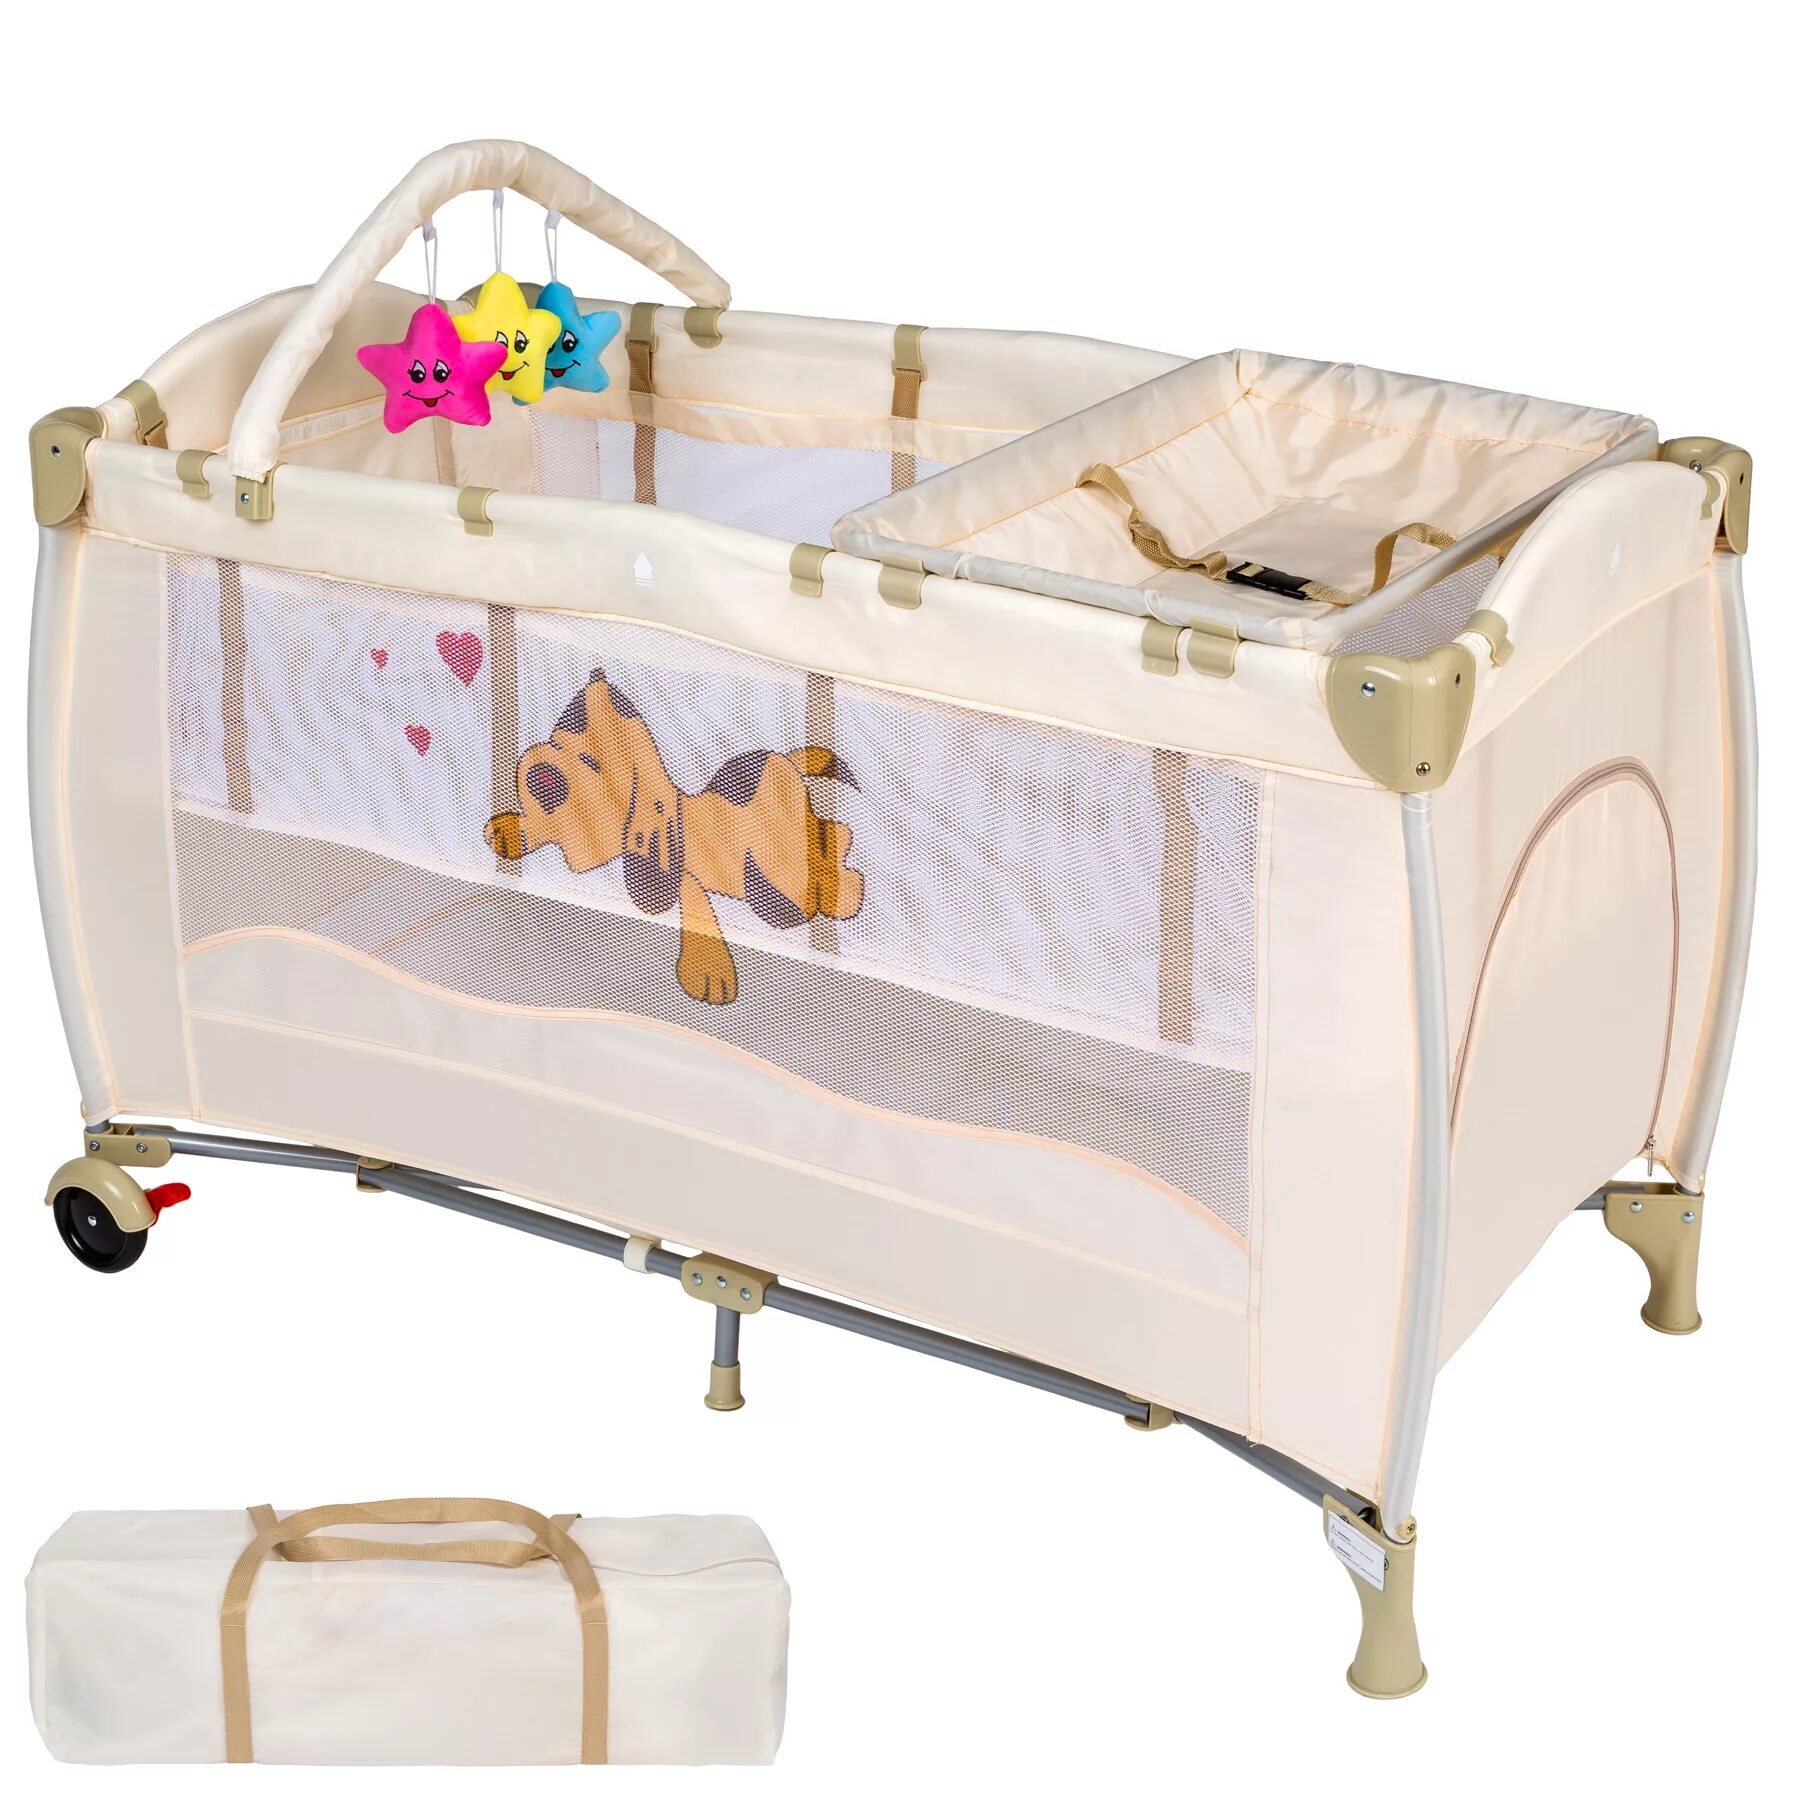 Valdera детская кровать. Переносная кроватка для ребенка. Складная детская кроватка. Складная детская кроватка для путешествий.